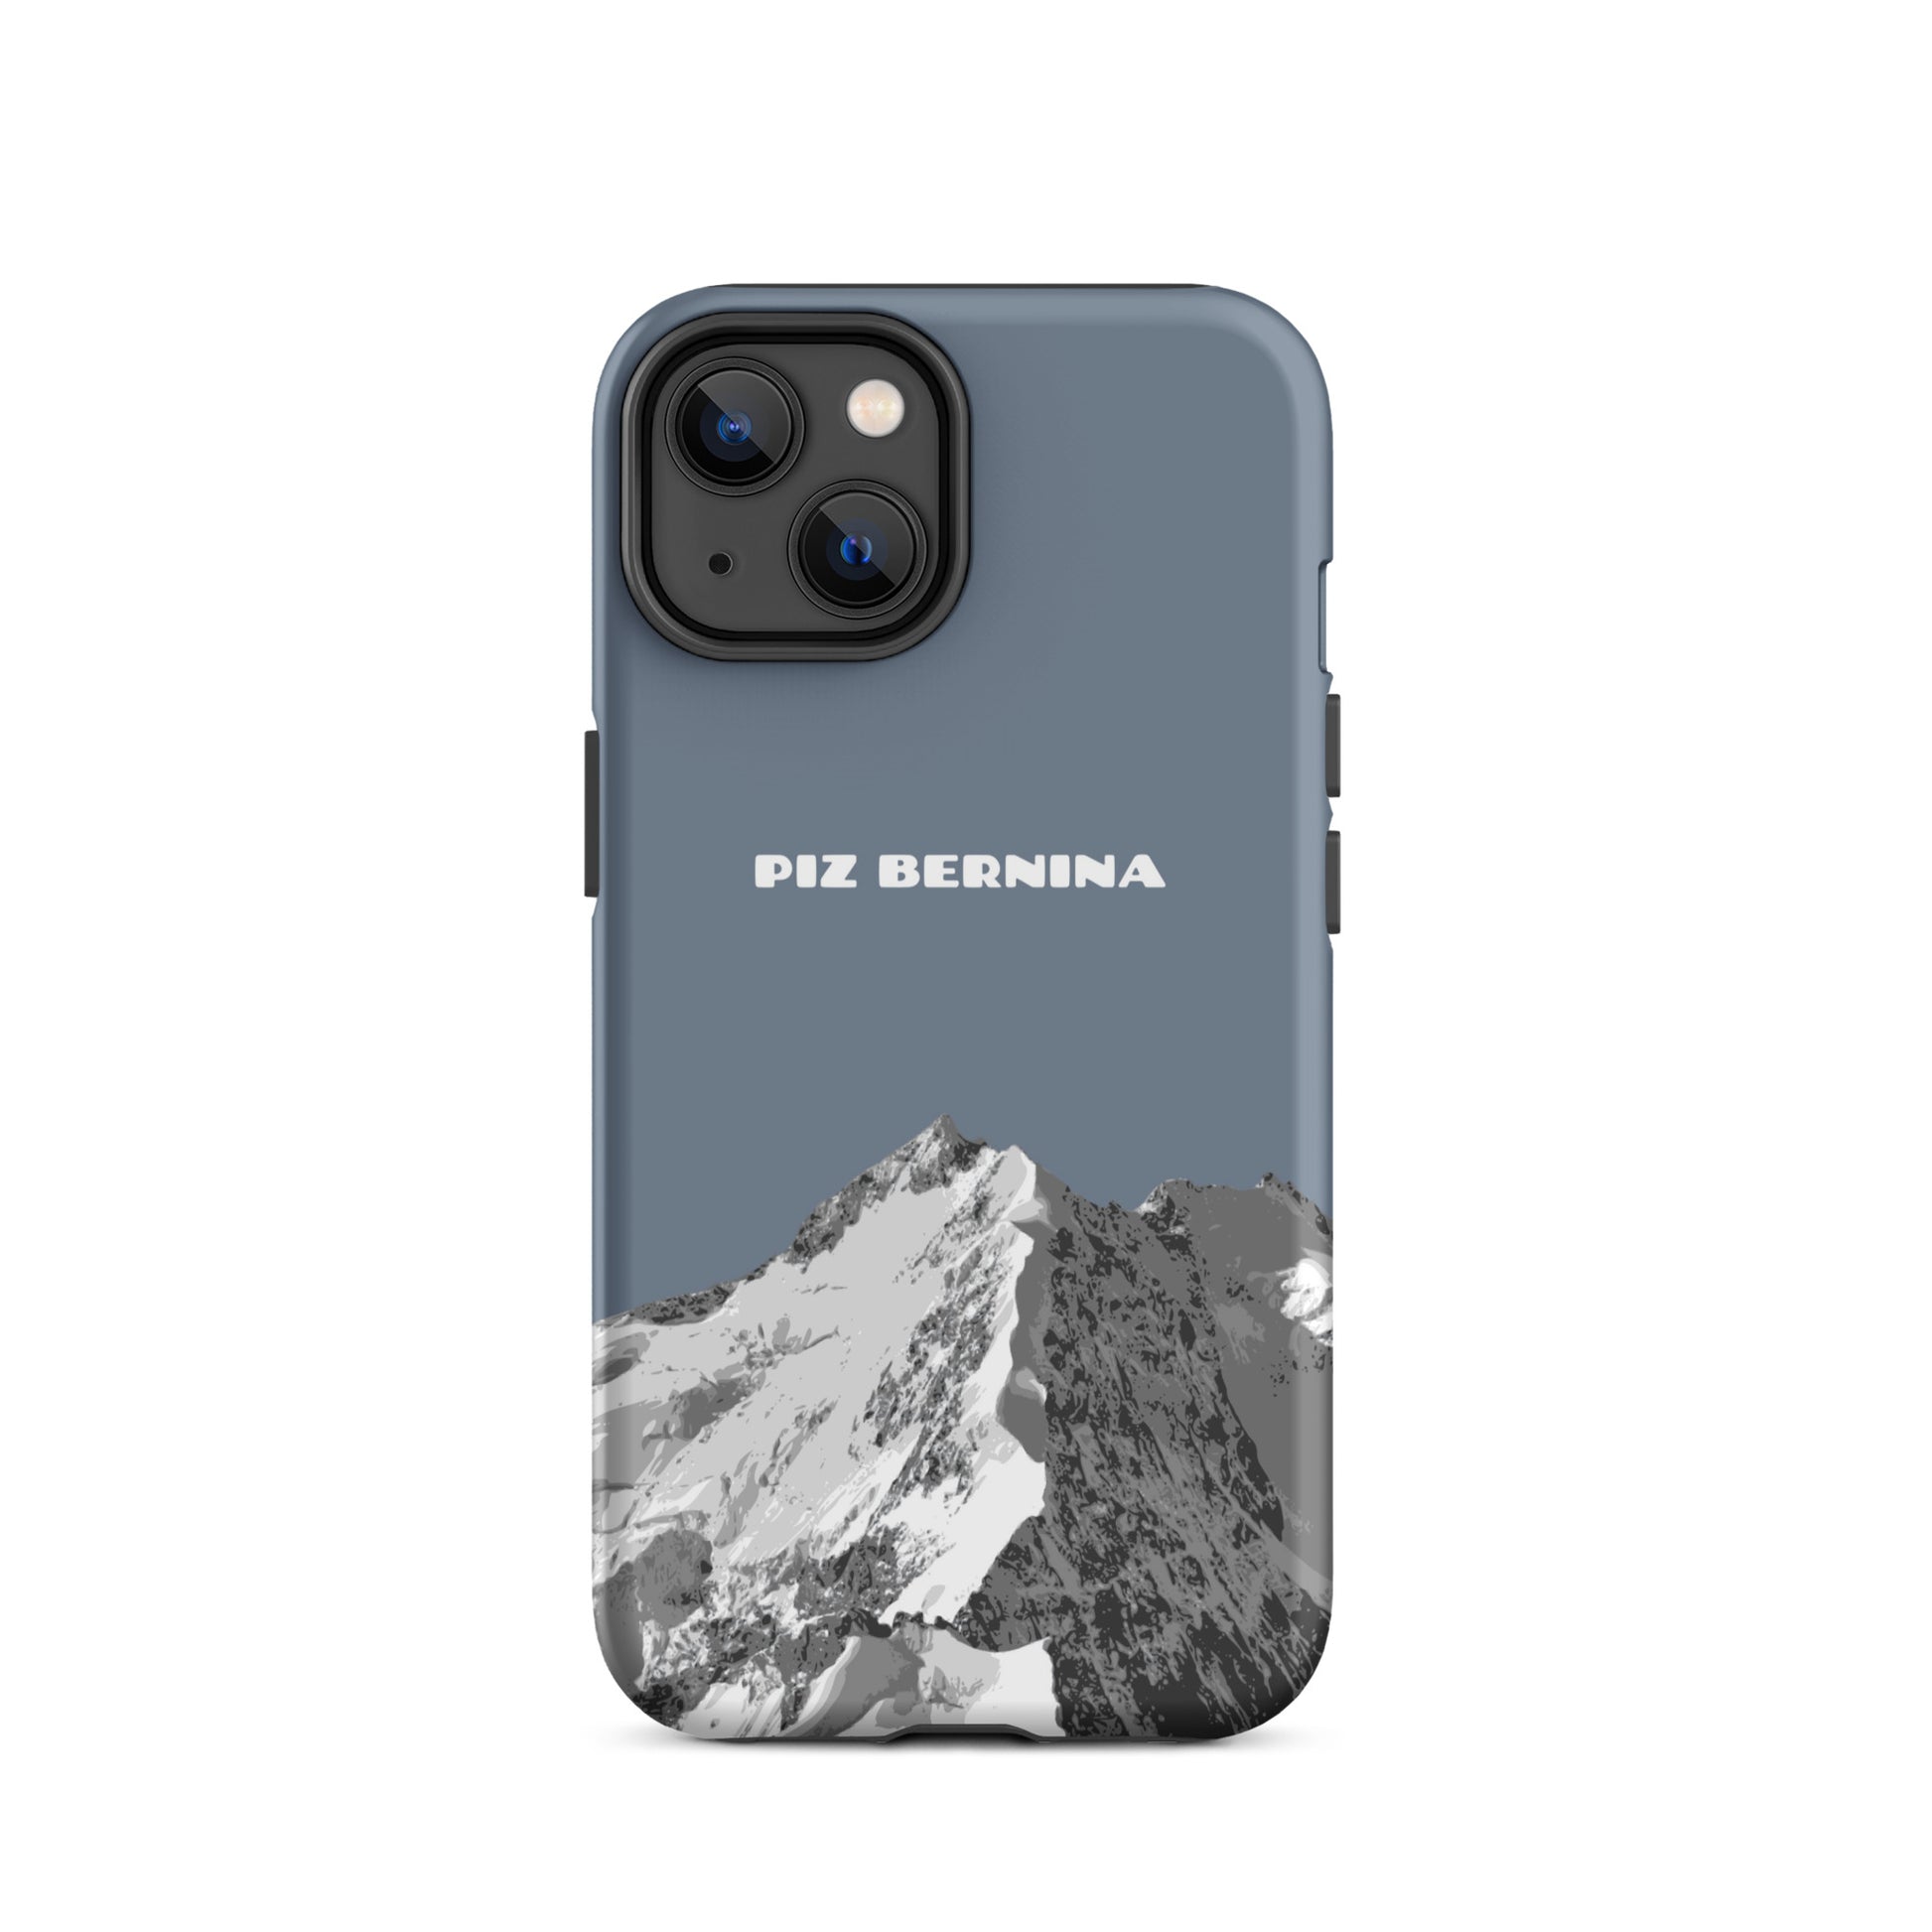 Hülle für das iPhone 14 von Apple in der Farbe Schiefergrau, dass den Piz Bernina in Graubünden zeigt.